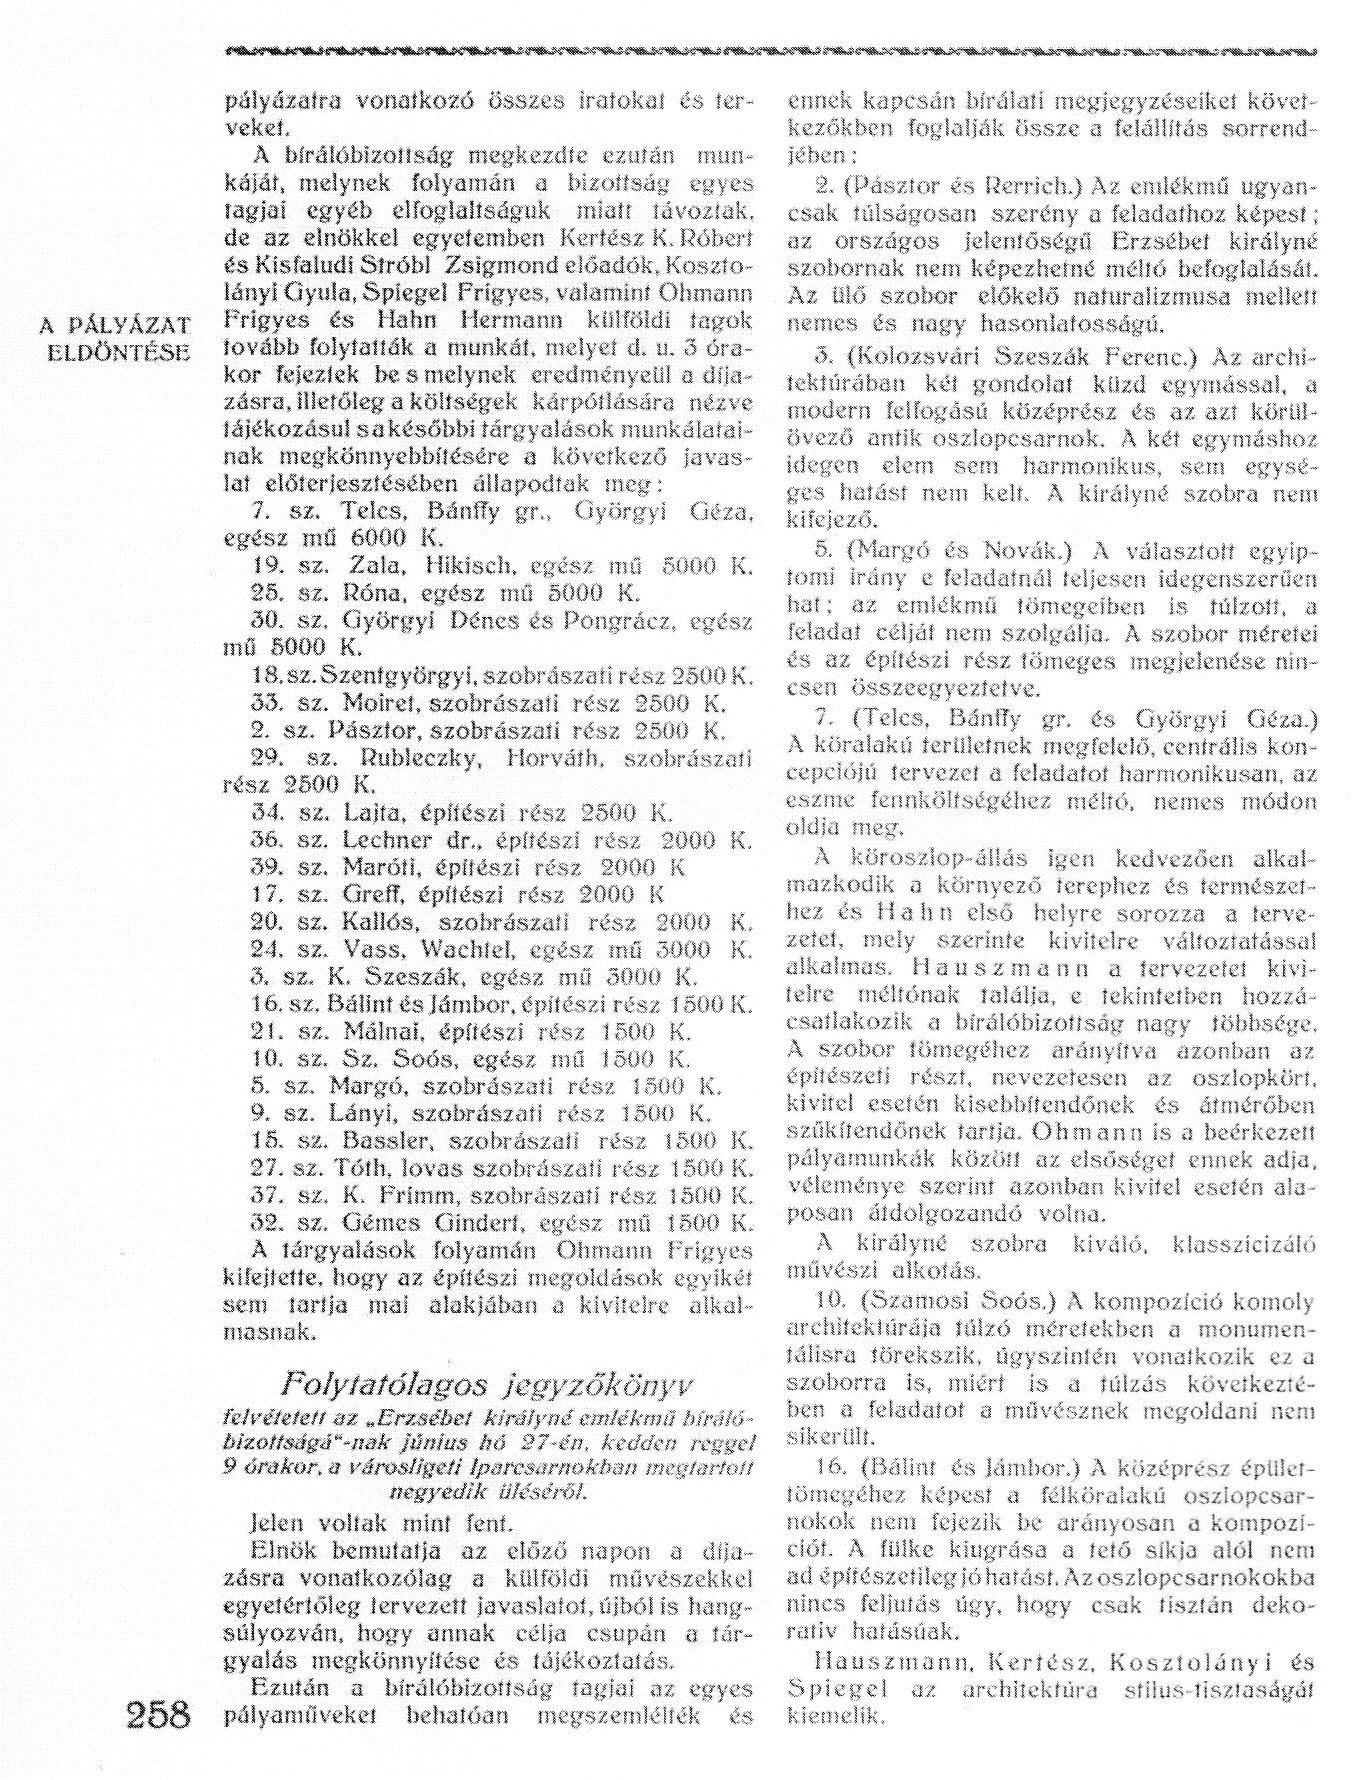 002_Magyar Iparművészet, 1916. 6. sz. 258. p. 